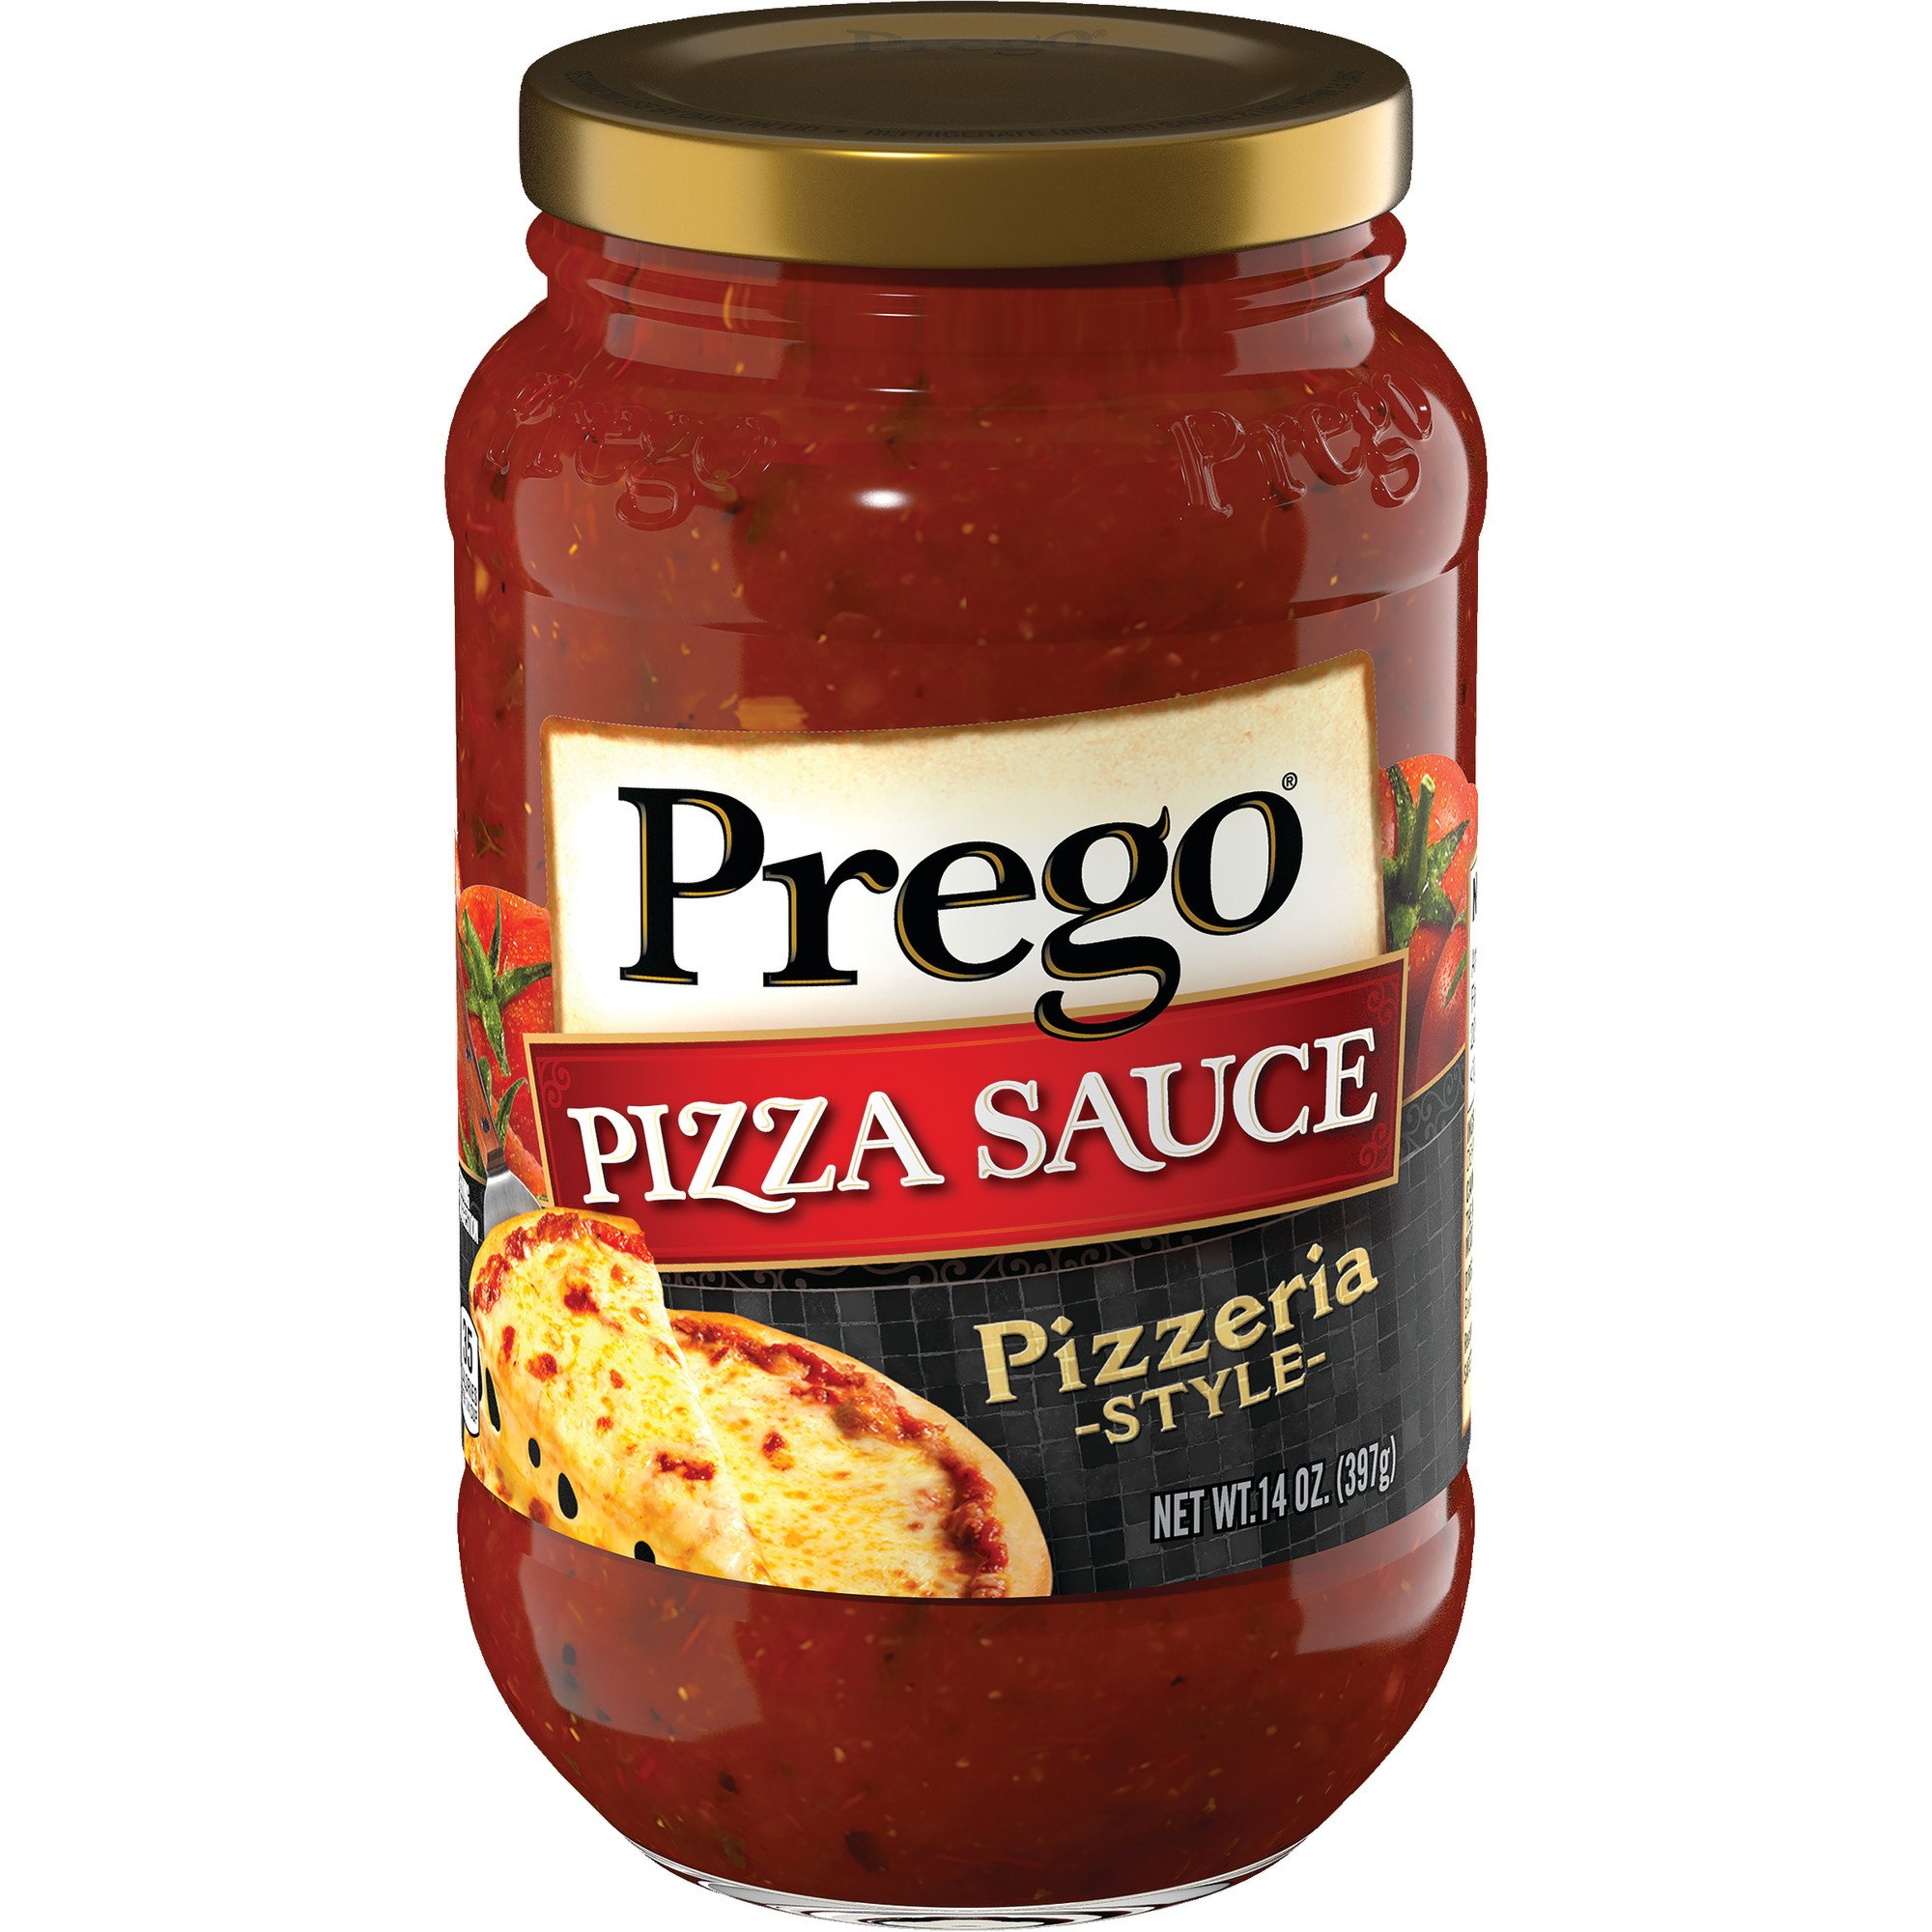 Prego Pizza Sauce, Pizzeria Style, 14 Ounce Jar